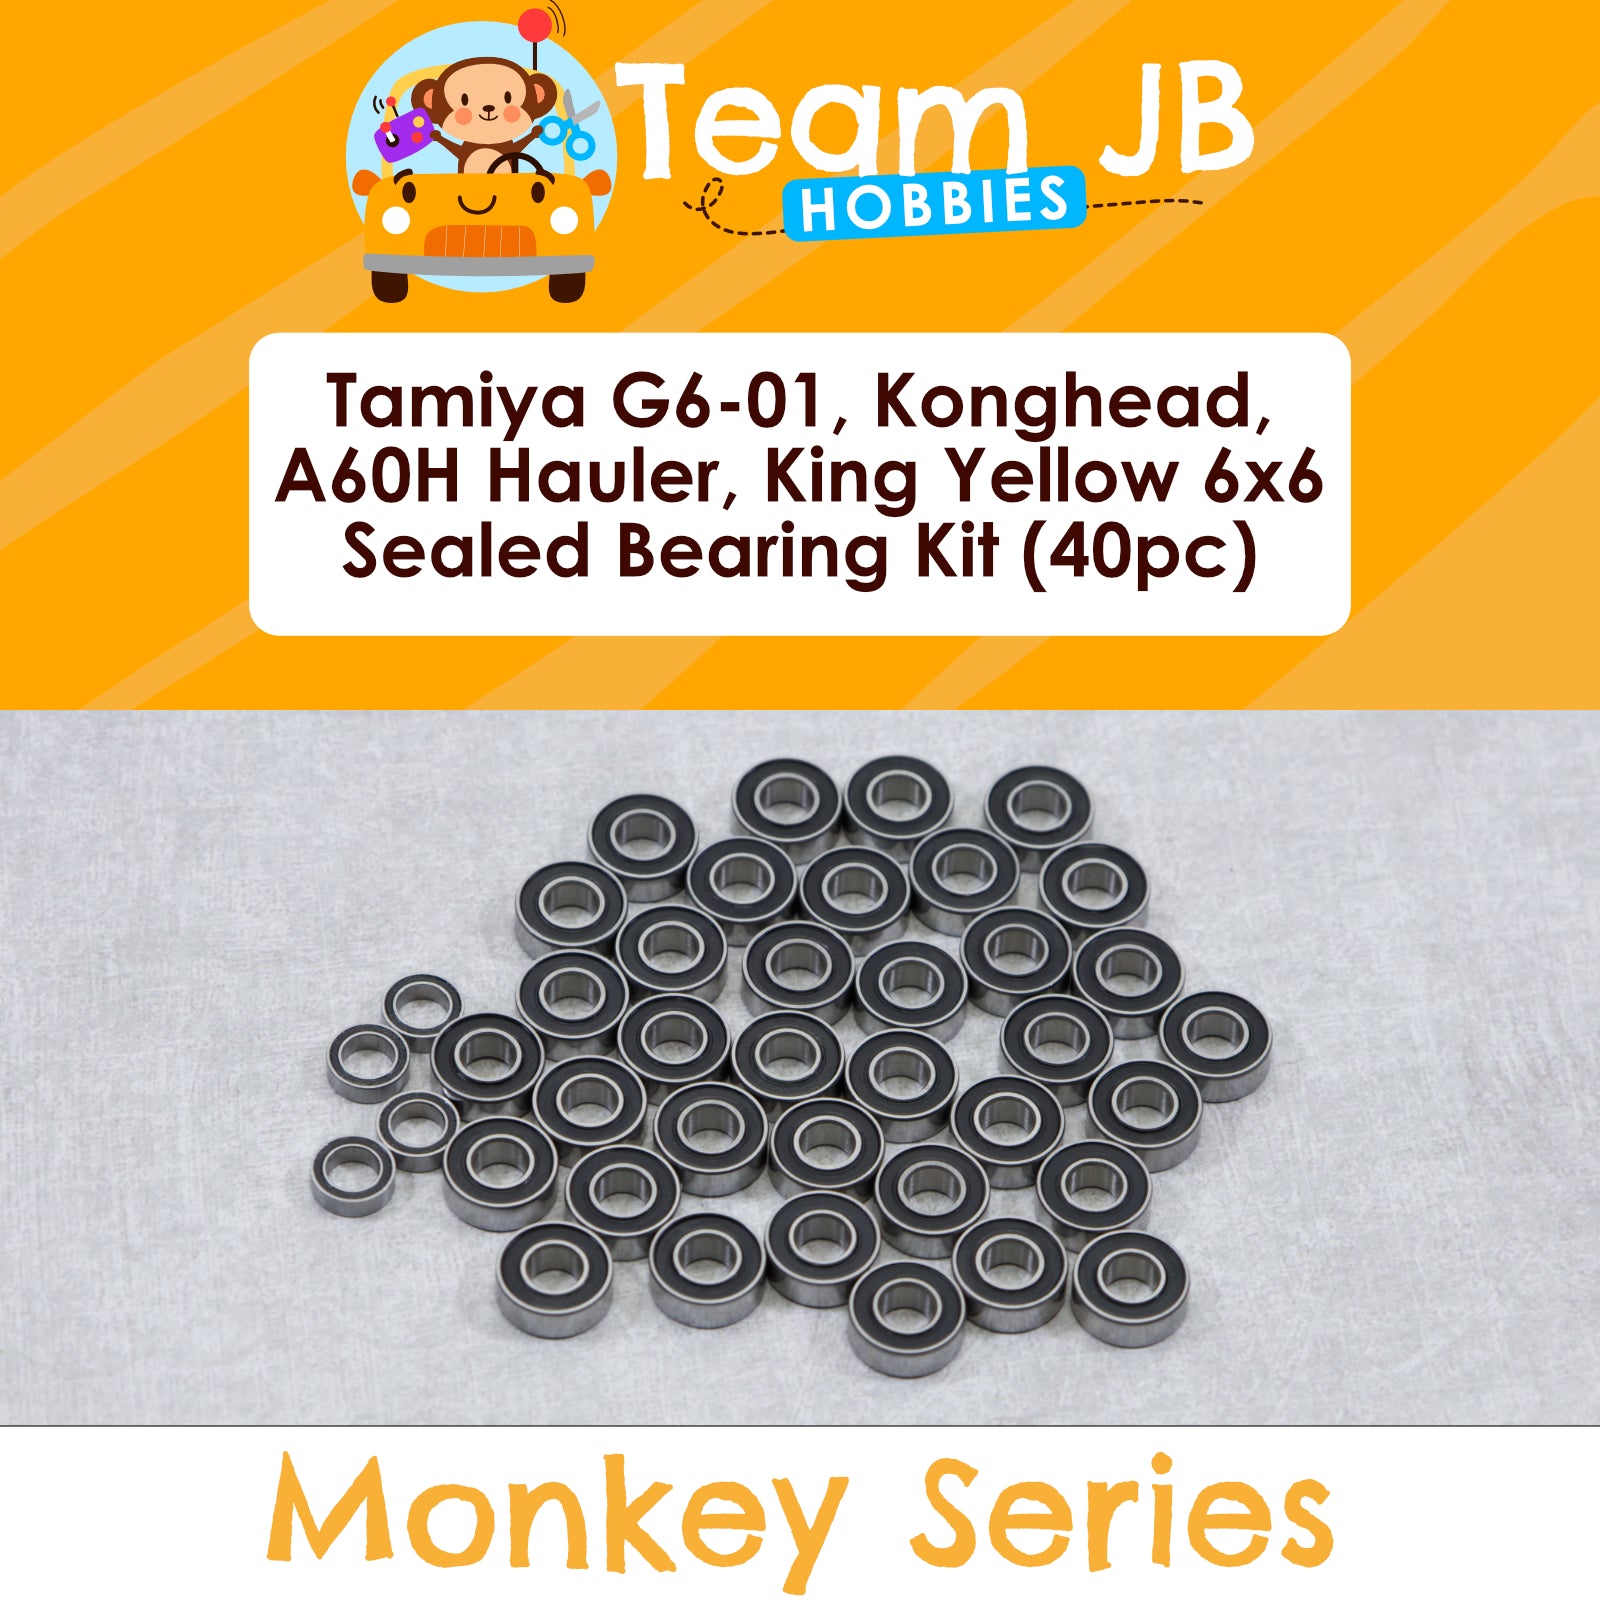 Tamiya G6-01, Konghead, A60H Hauler, King Yellow 6x6 - Sealed Bearing Kit